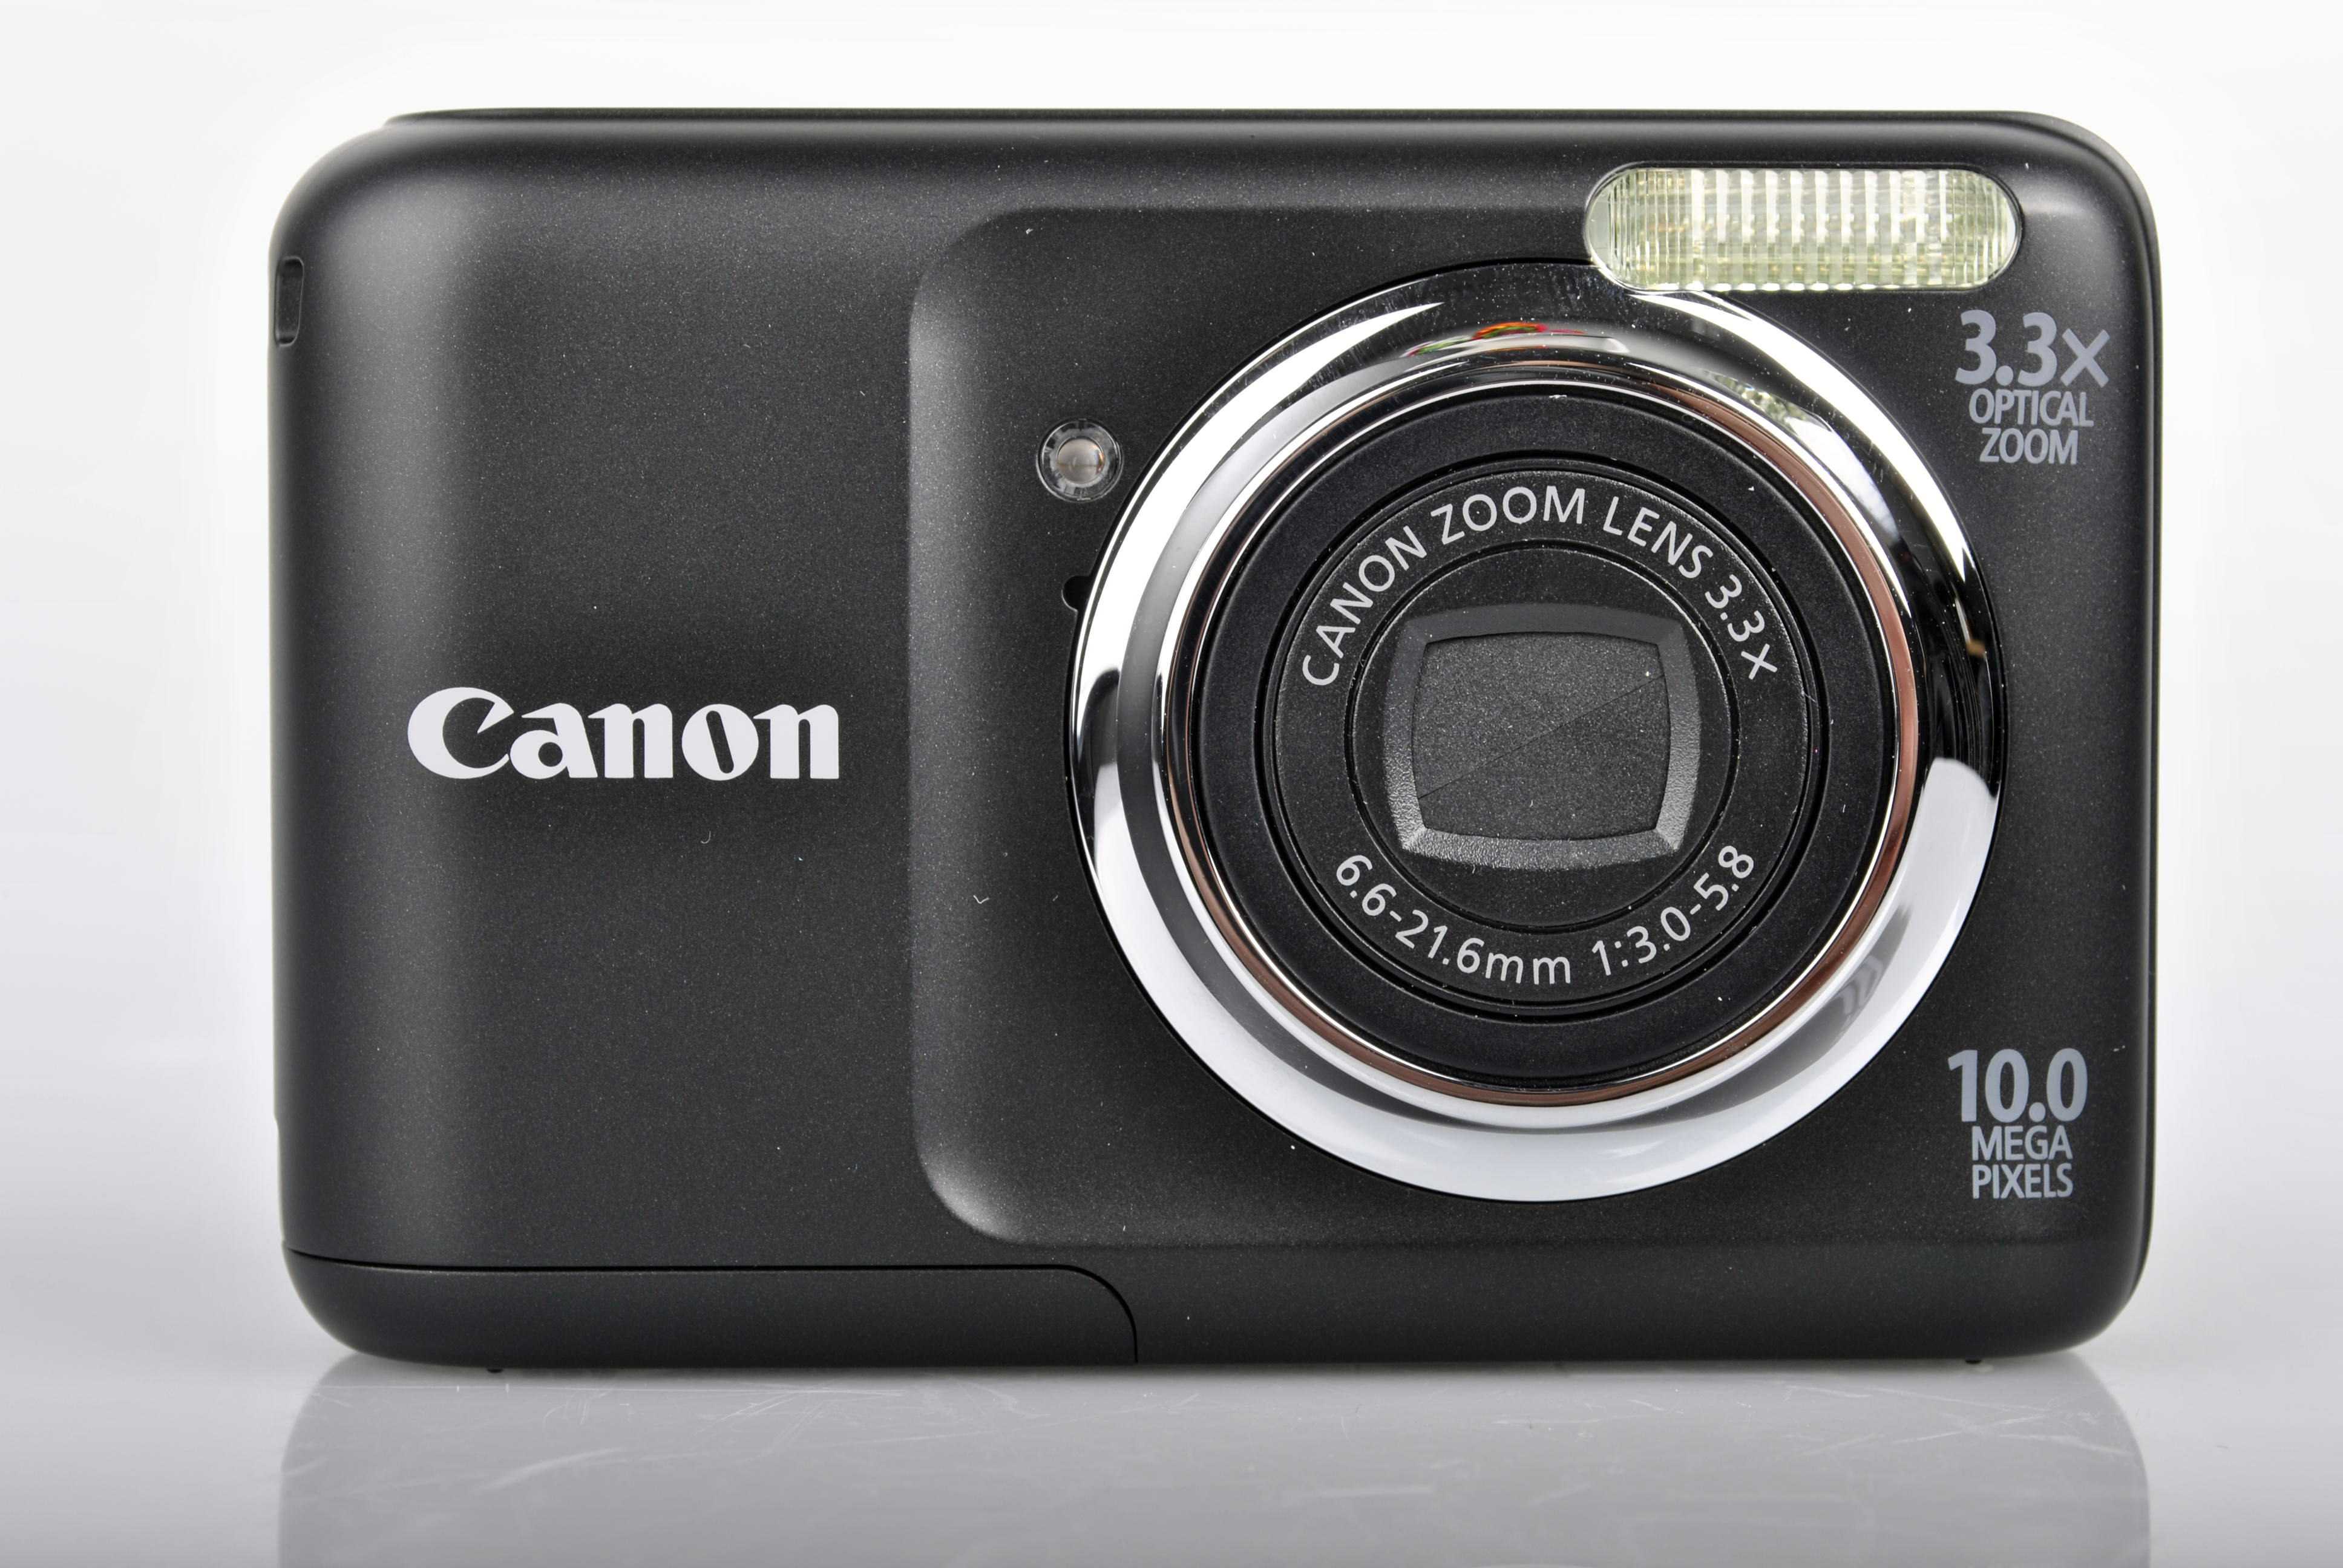 Фотоаппарат canon powershot powershot a800 silver — купить, цена и характеристики, отзывы